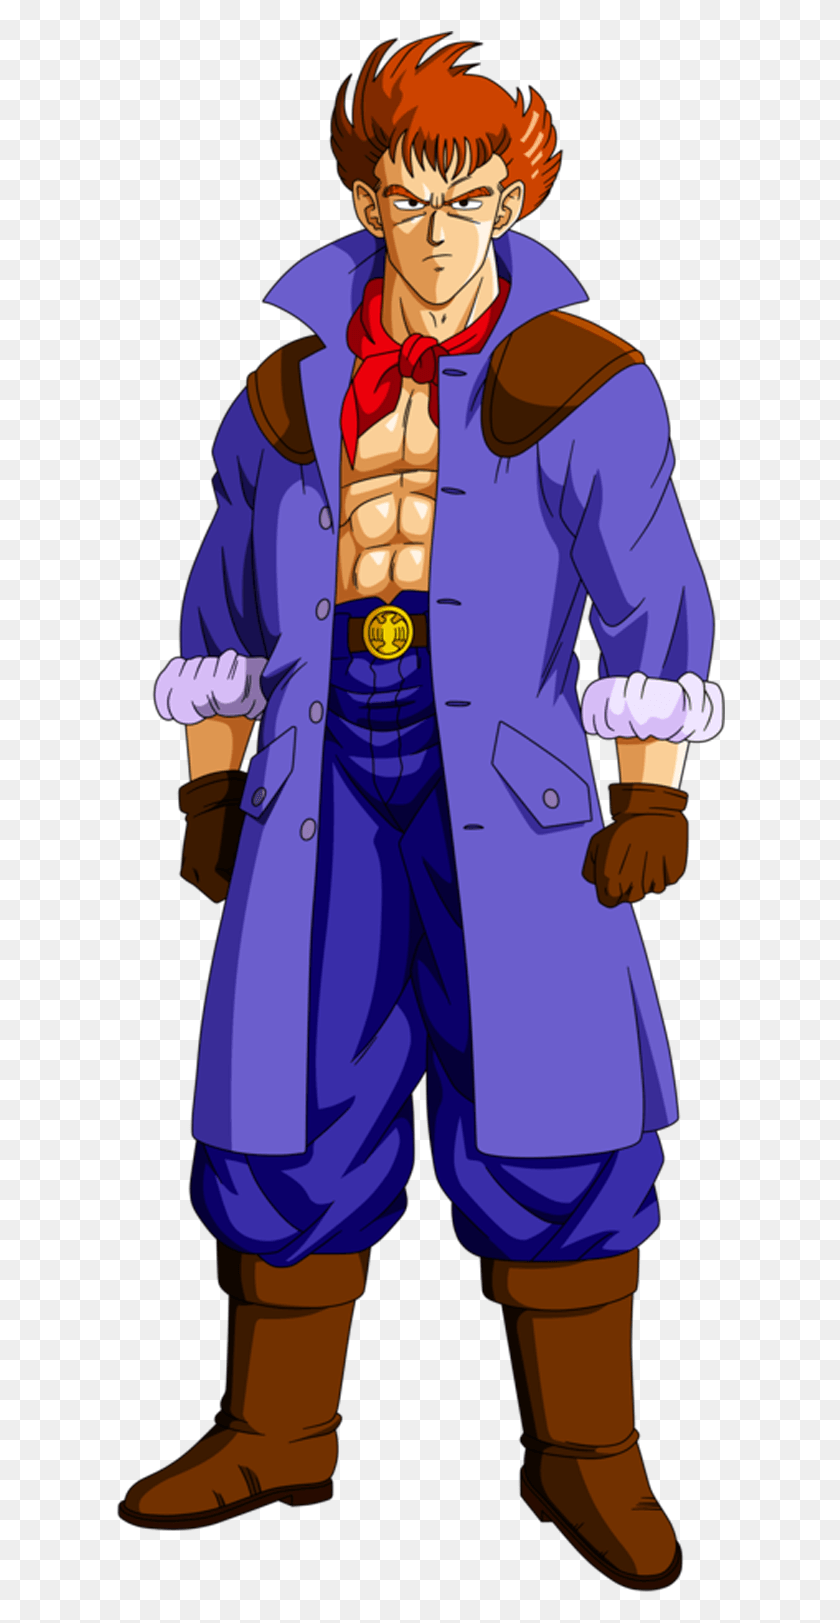 610x1563 Coronel Silver Dbz Персонажи Dragon Ball Z Goku Красная Лента Полковник Сильвер, Одежда, Одежда, Пальто Png Скачать